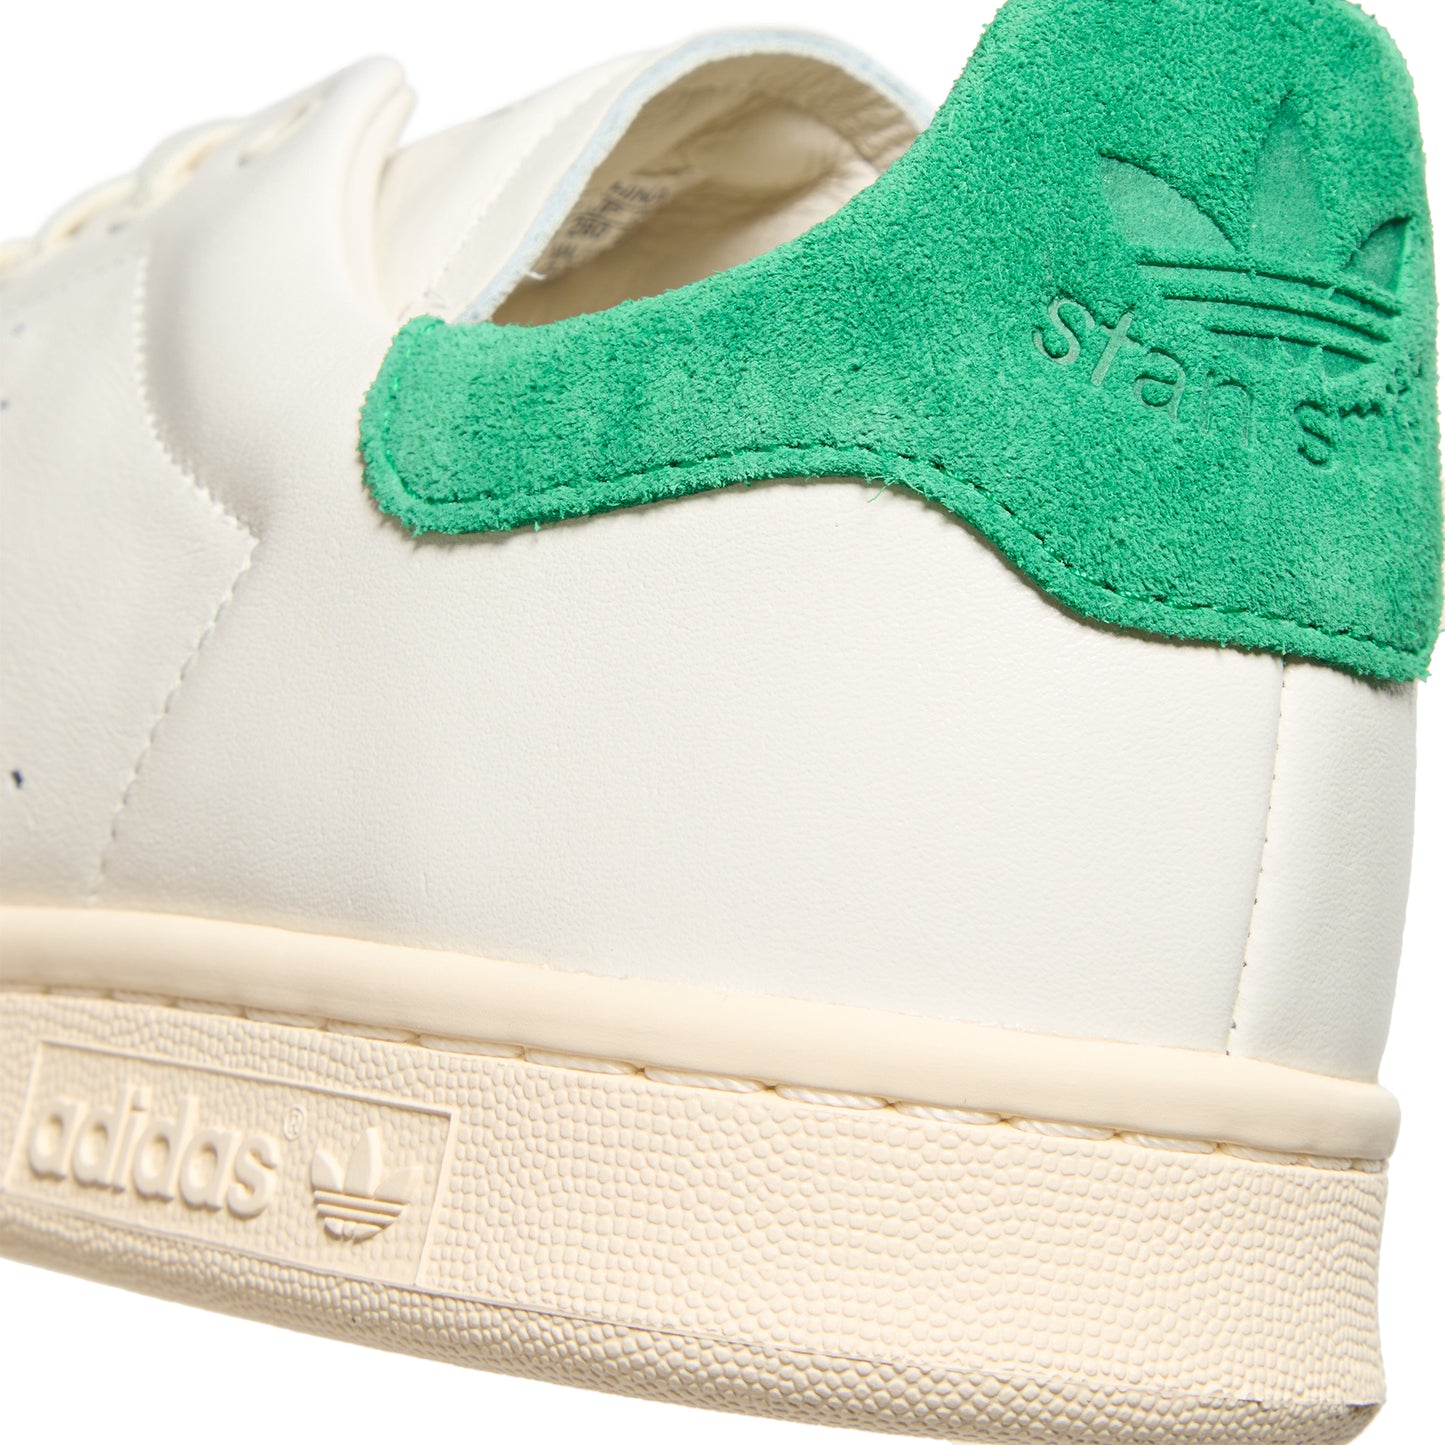 adidas Stan Smith LUX (Cloud White/Cream White/Green)